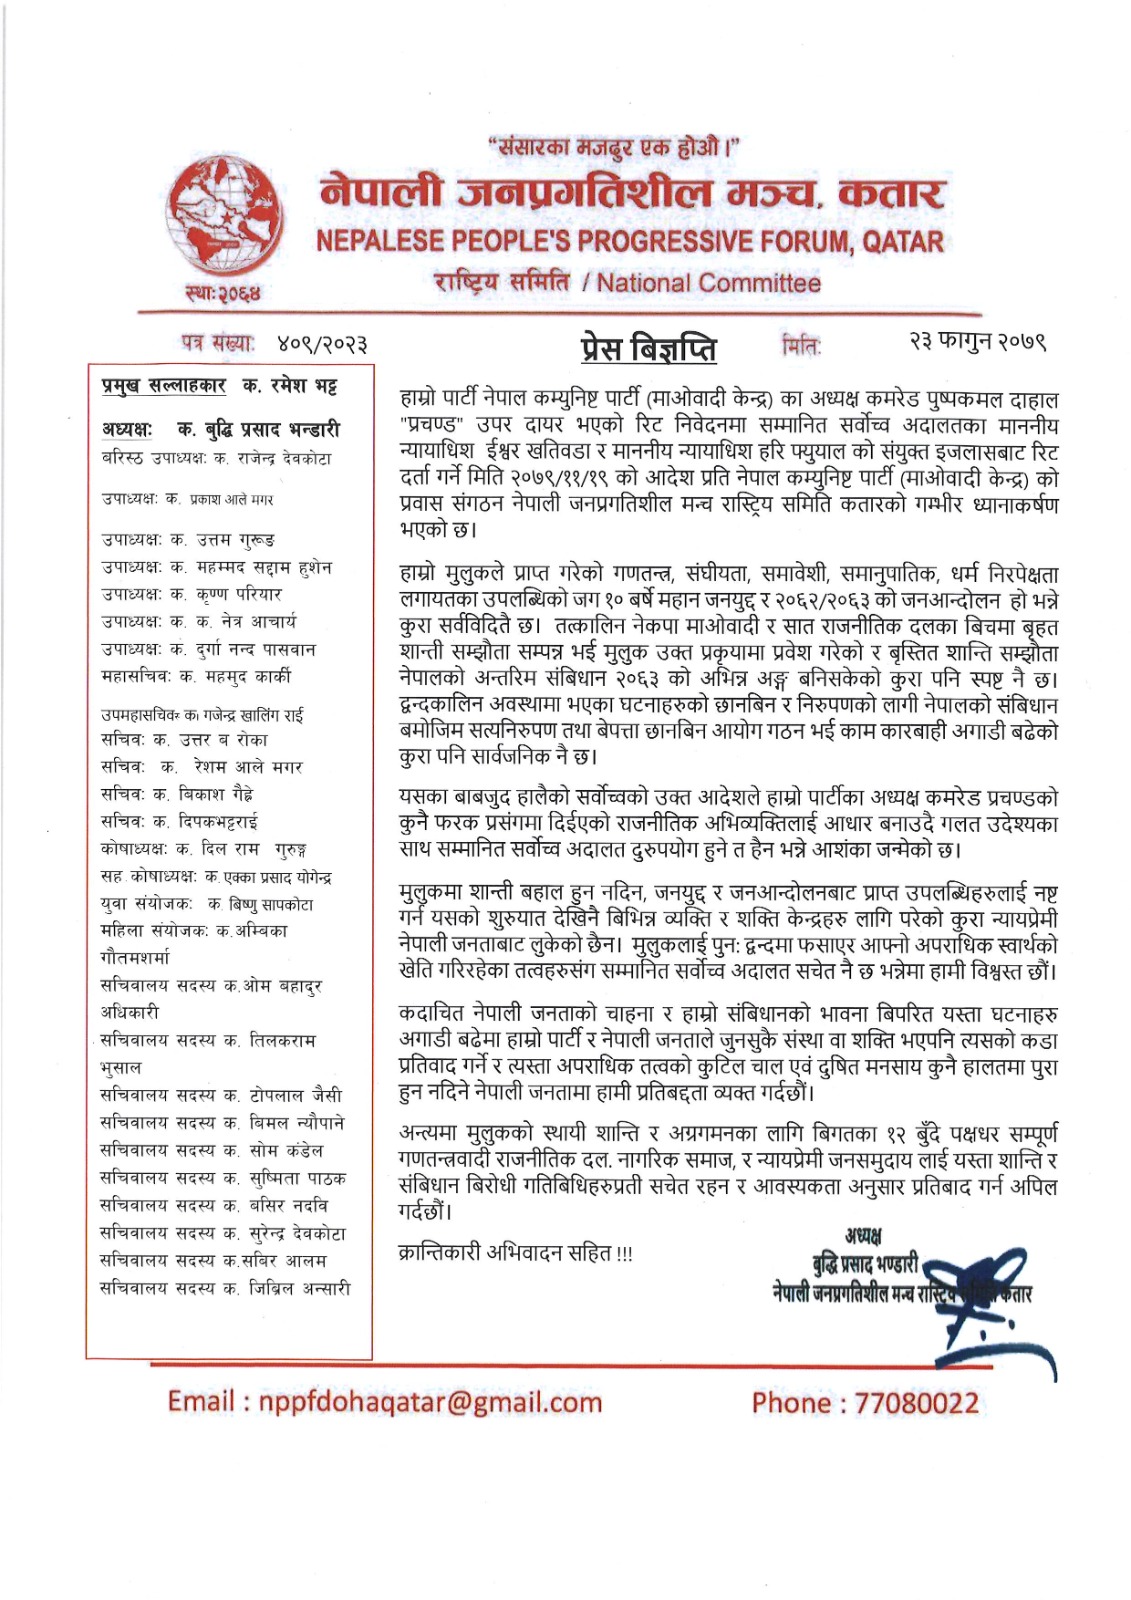 नेपाली जनप्रगतिशील मञ्च कतारद्वारा प्रेस बिज्ञपति जारी